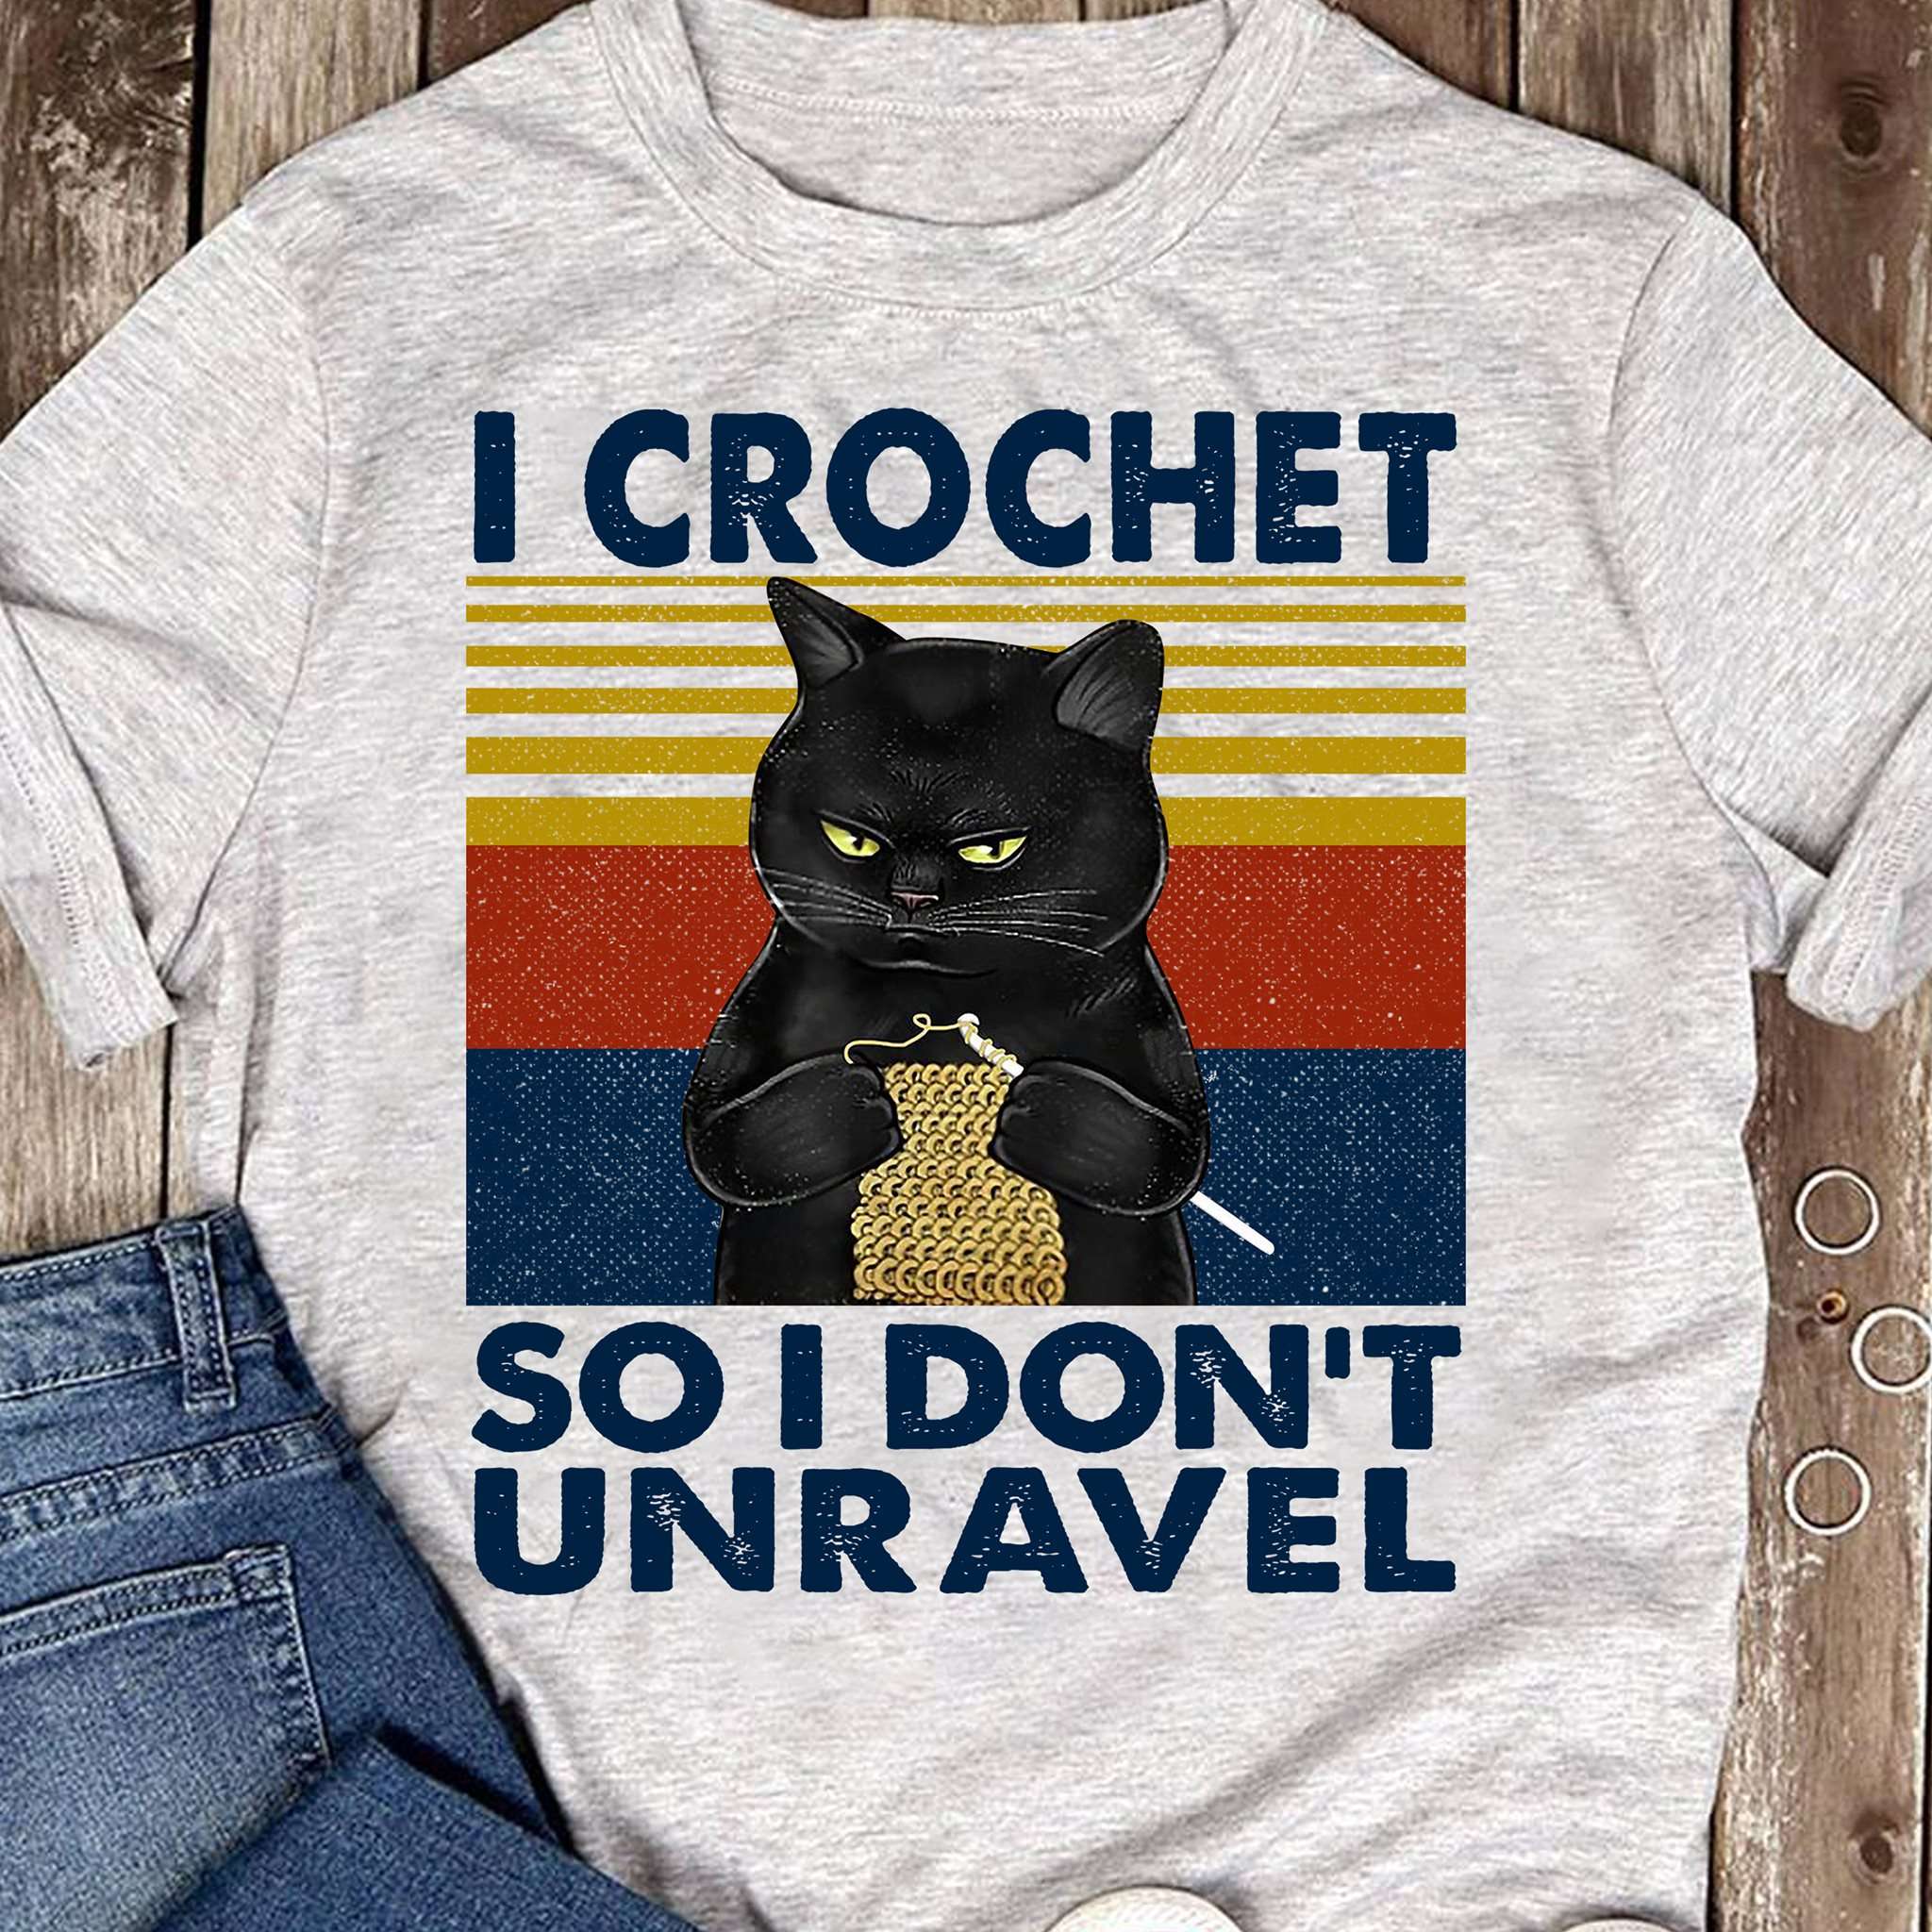 Black Cat Crochet - I crochet so i don't unravel